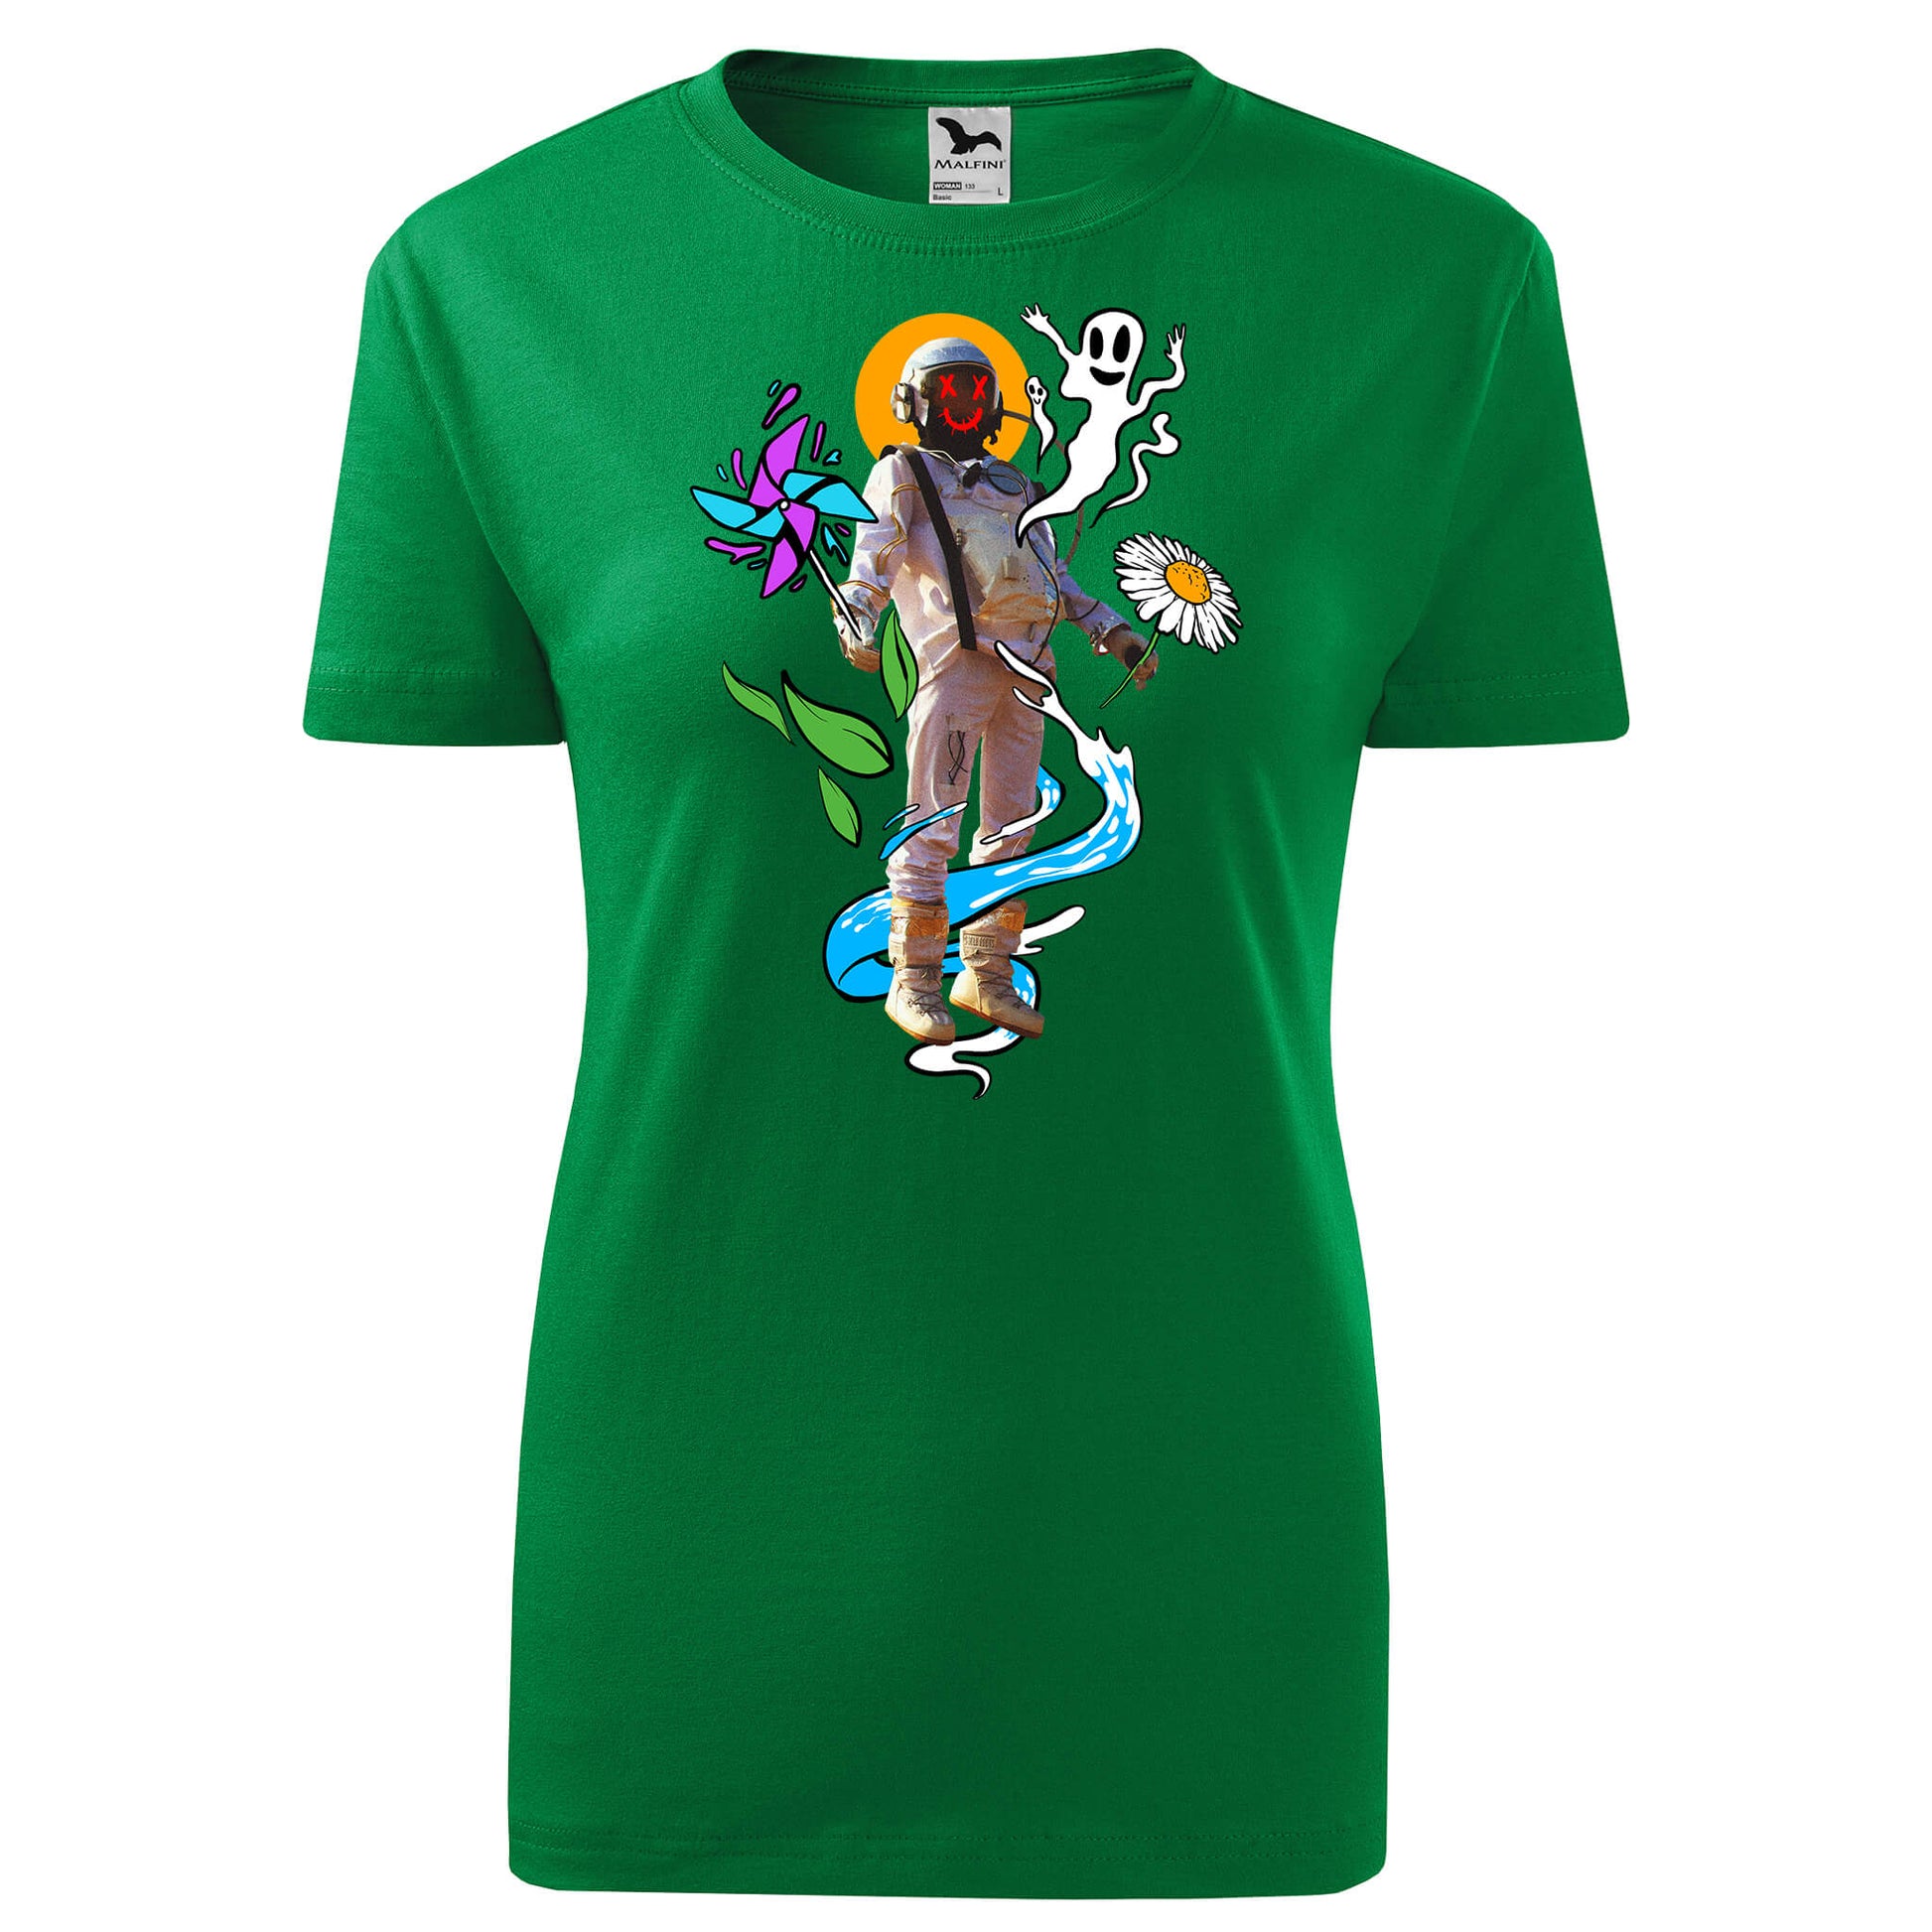 Trippy astronaut t-shirt - rvdesignprint